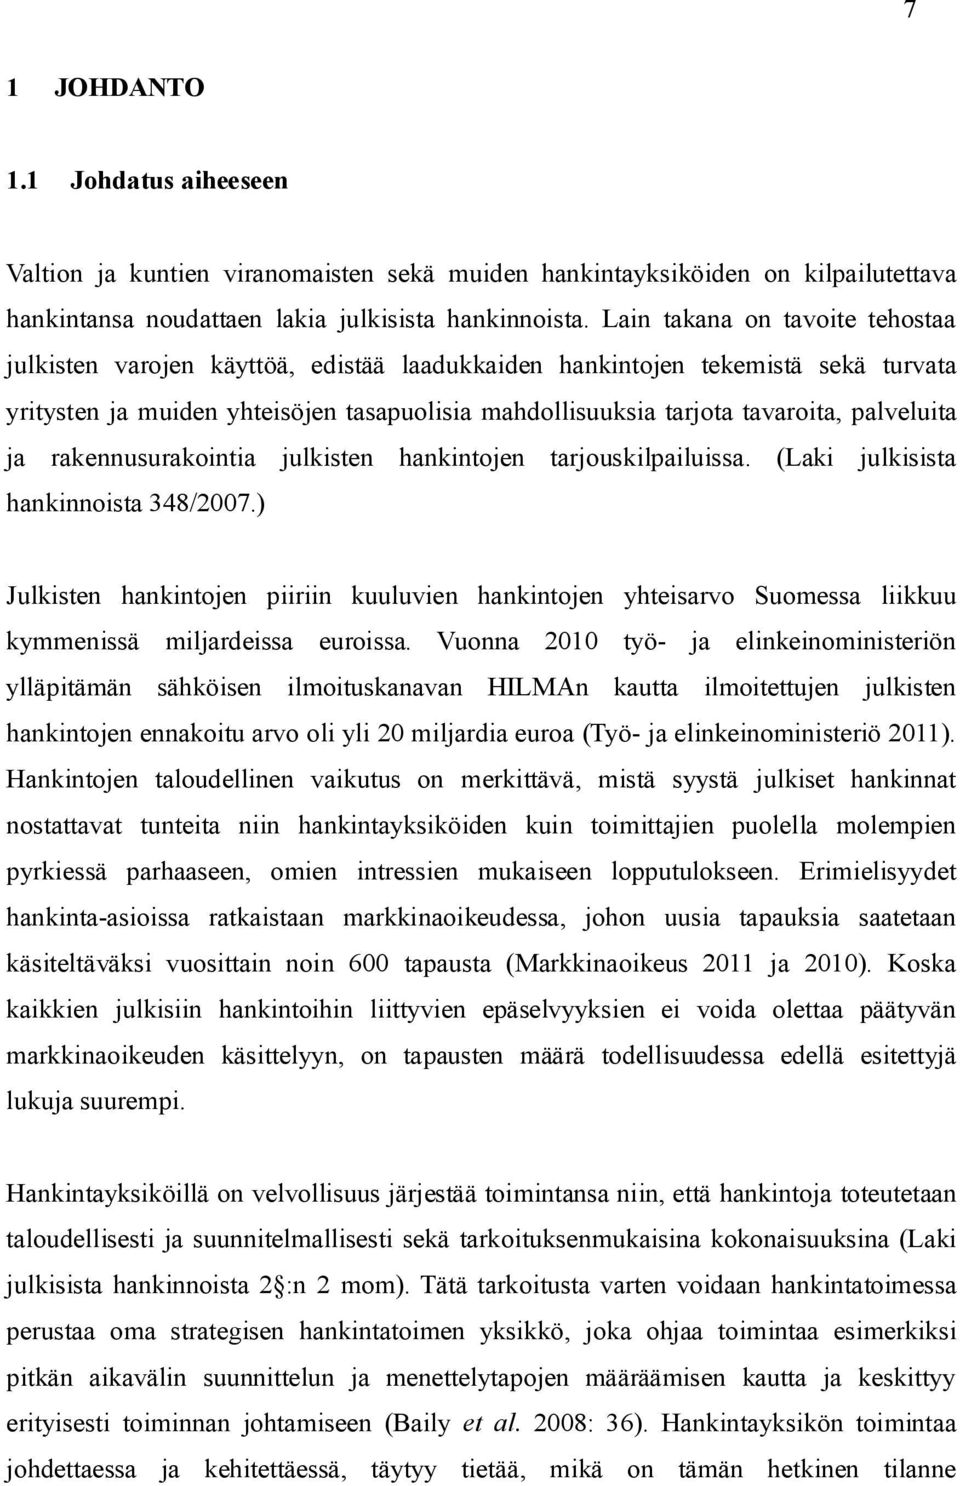 palveluita ja rakennusurakointia julkisten hankintojen tarjouskilpailuissa. (Laki julkisista hankinnoista 348/2007.